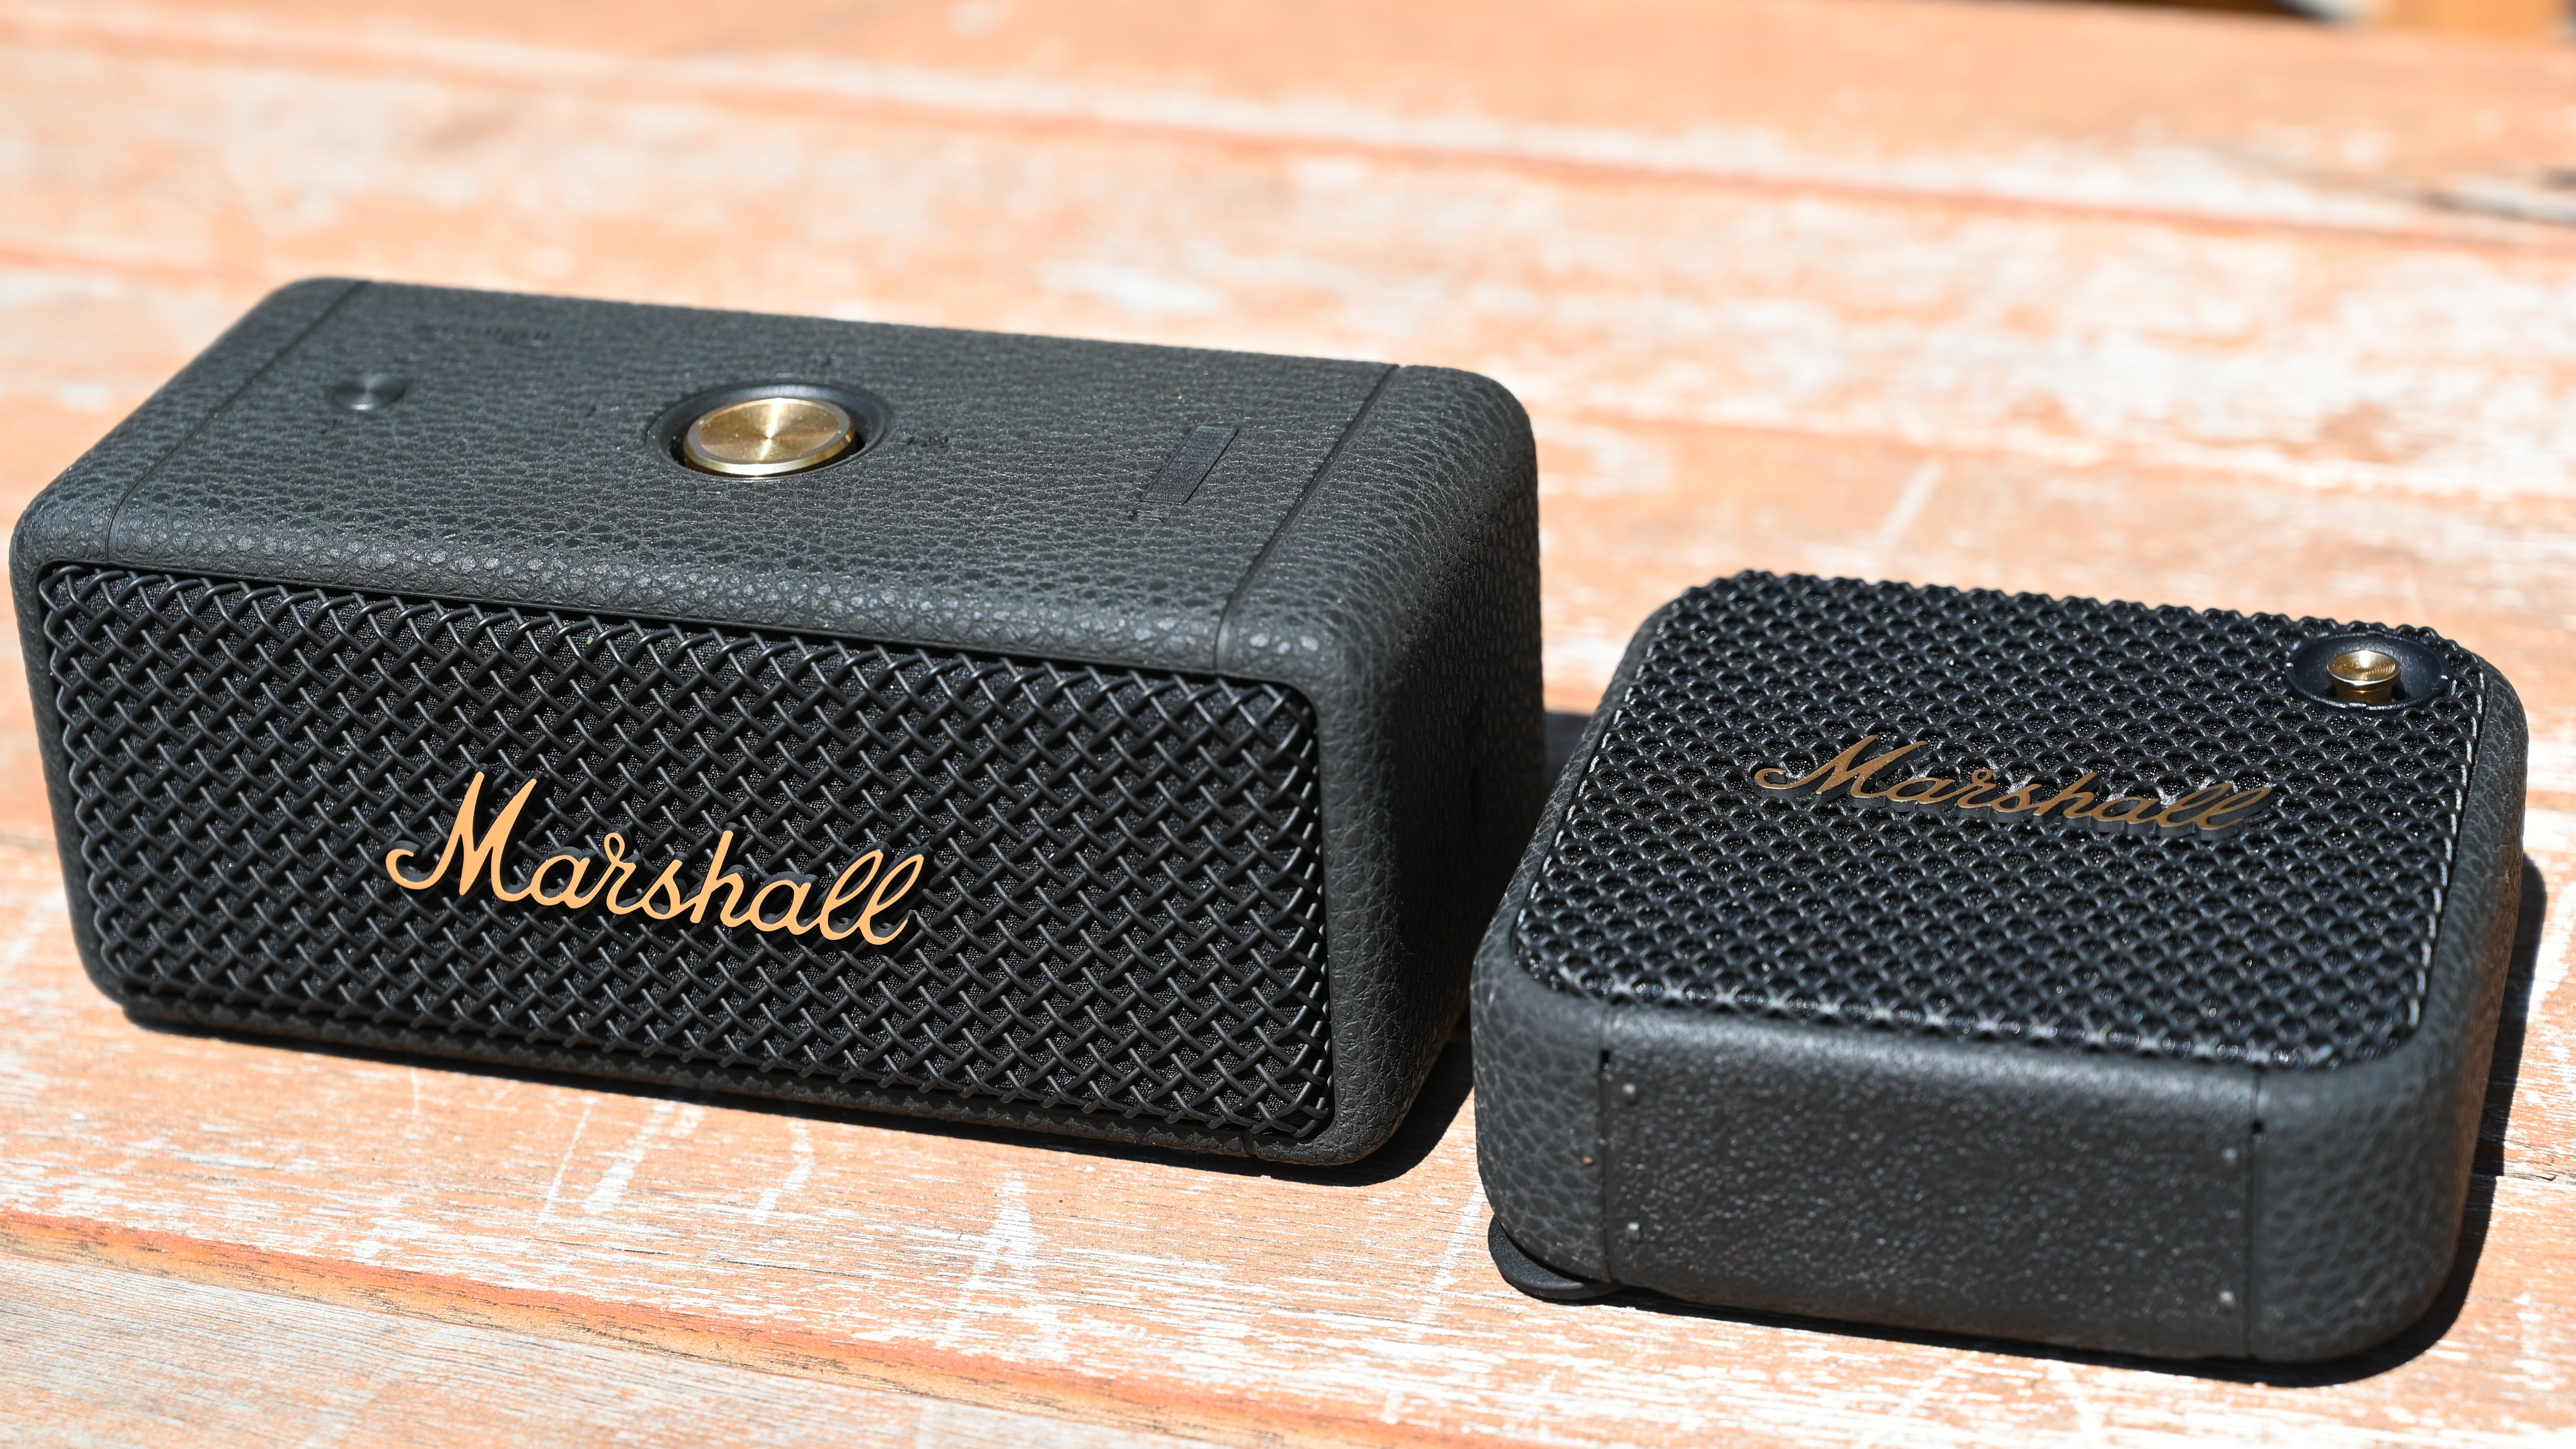 Marshall Willen VS Emberton 2 - Best Portable Speaker? 